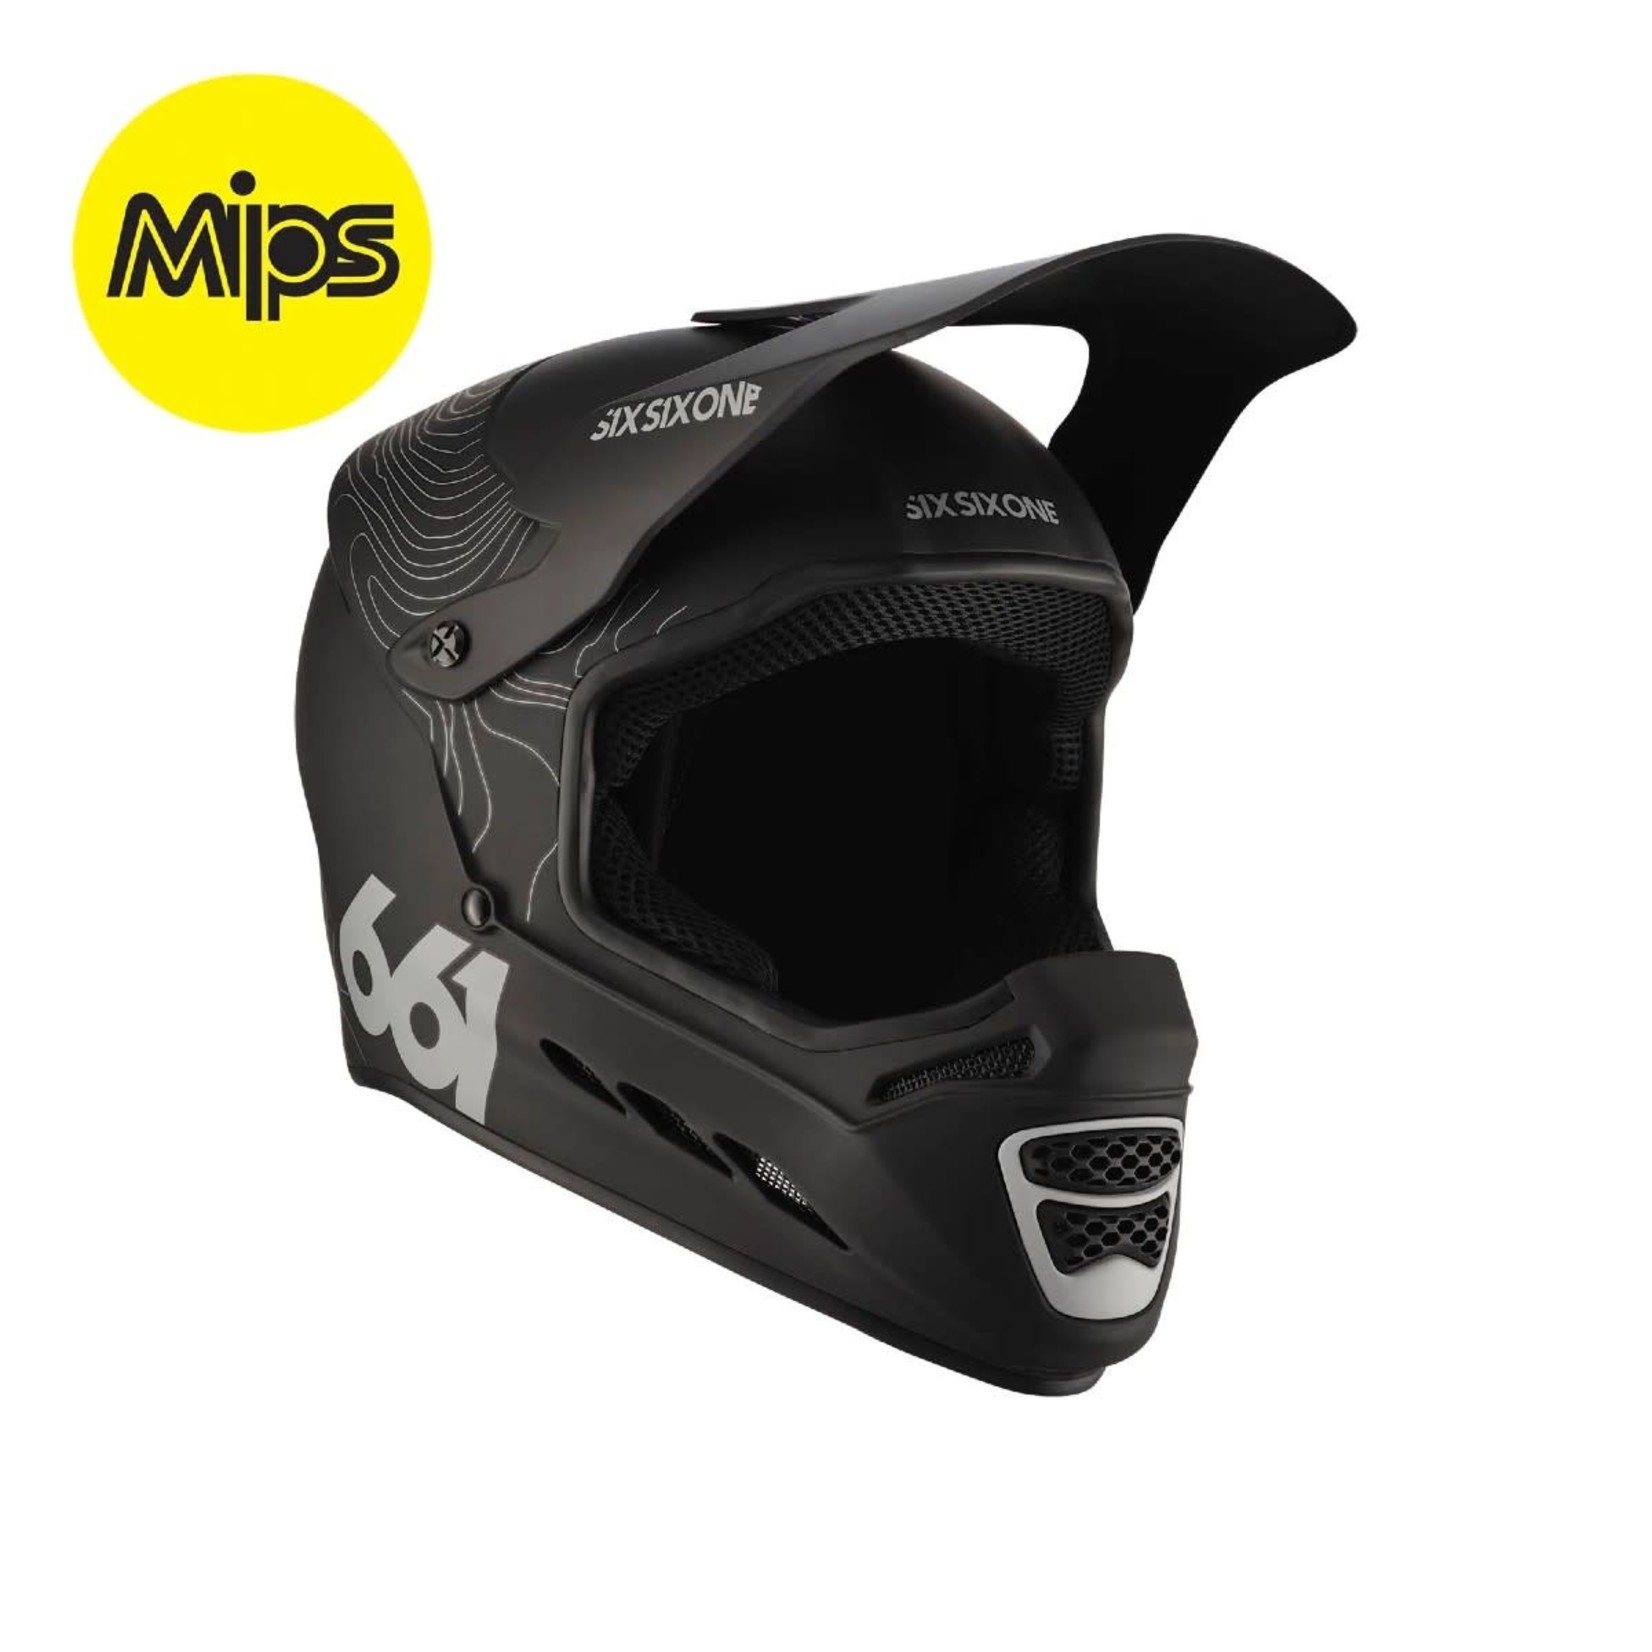 661 Reset MIPS Helmet